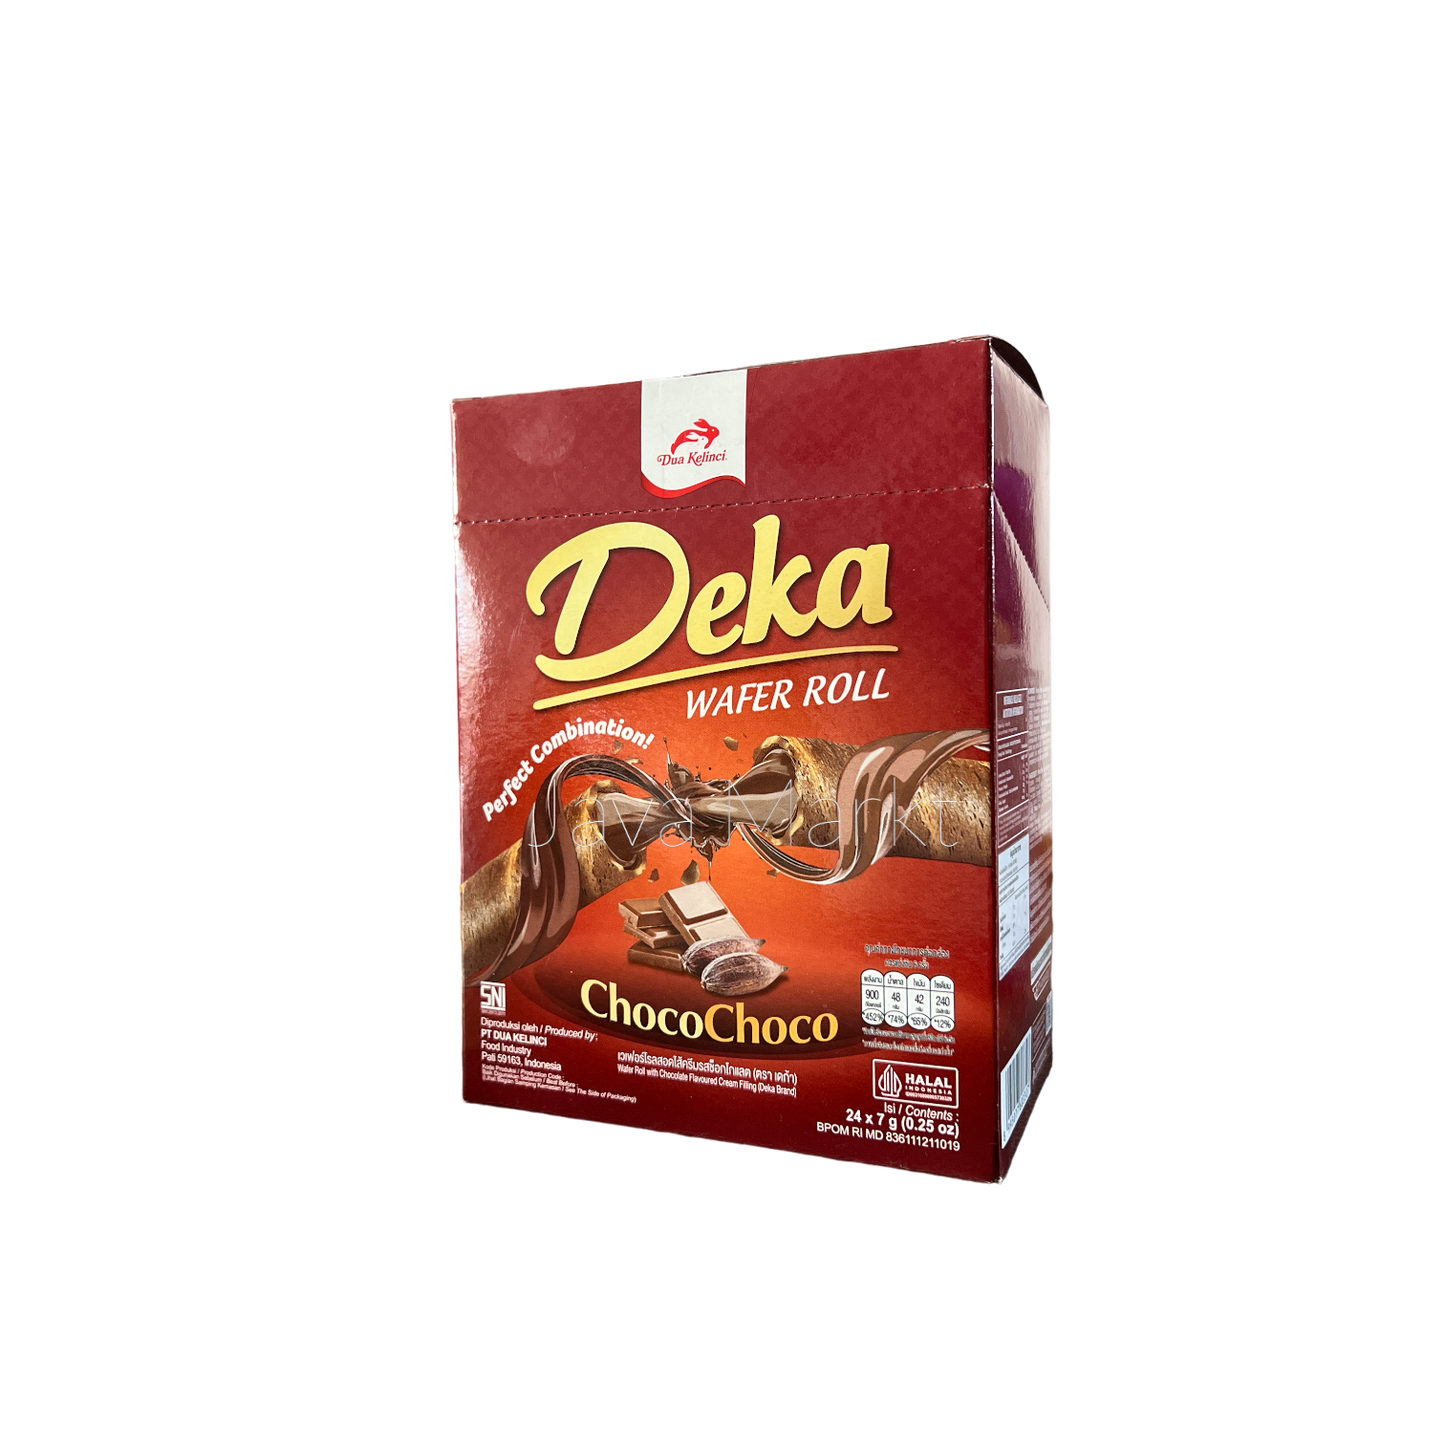 Deka Wafer Roll ChocoChoco - Java Markt